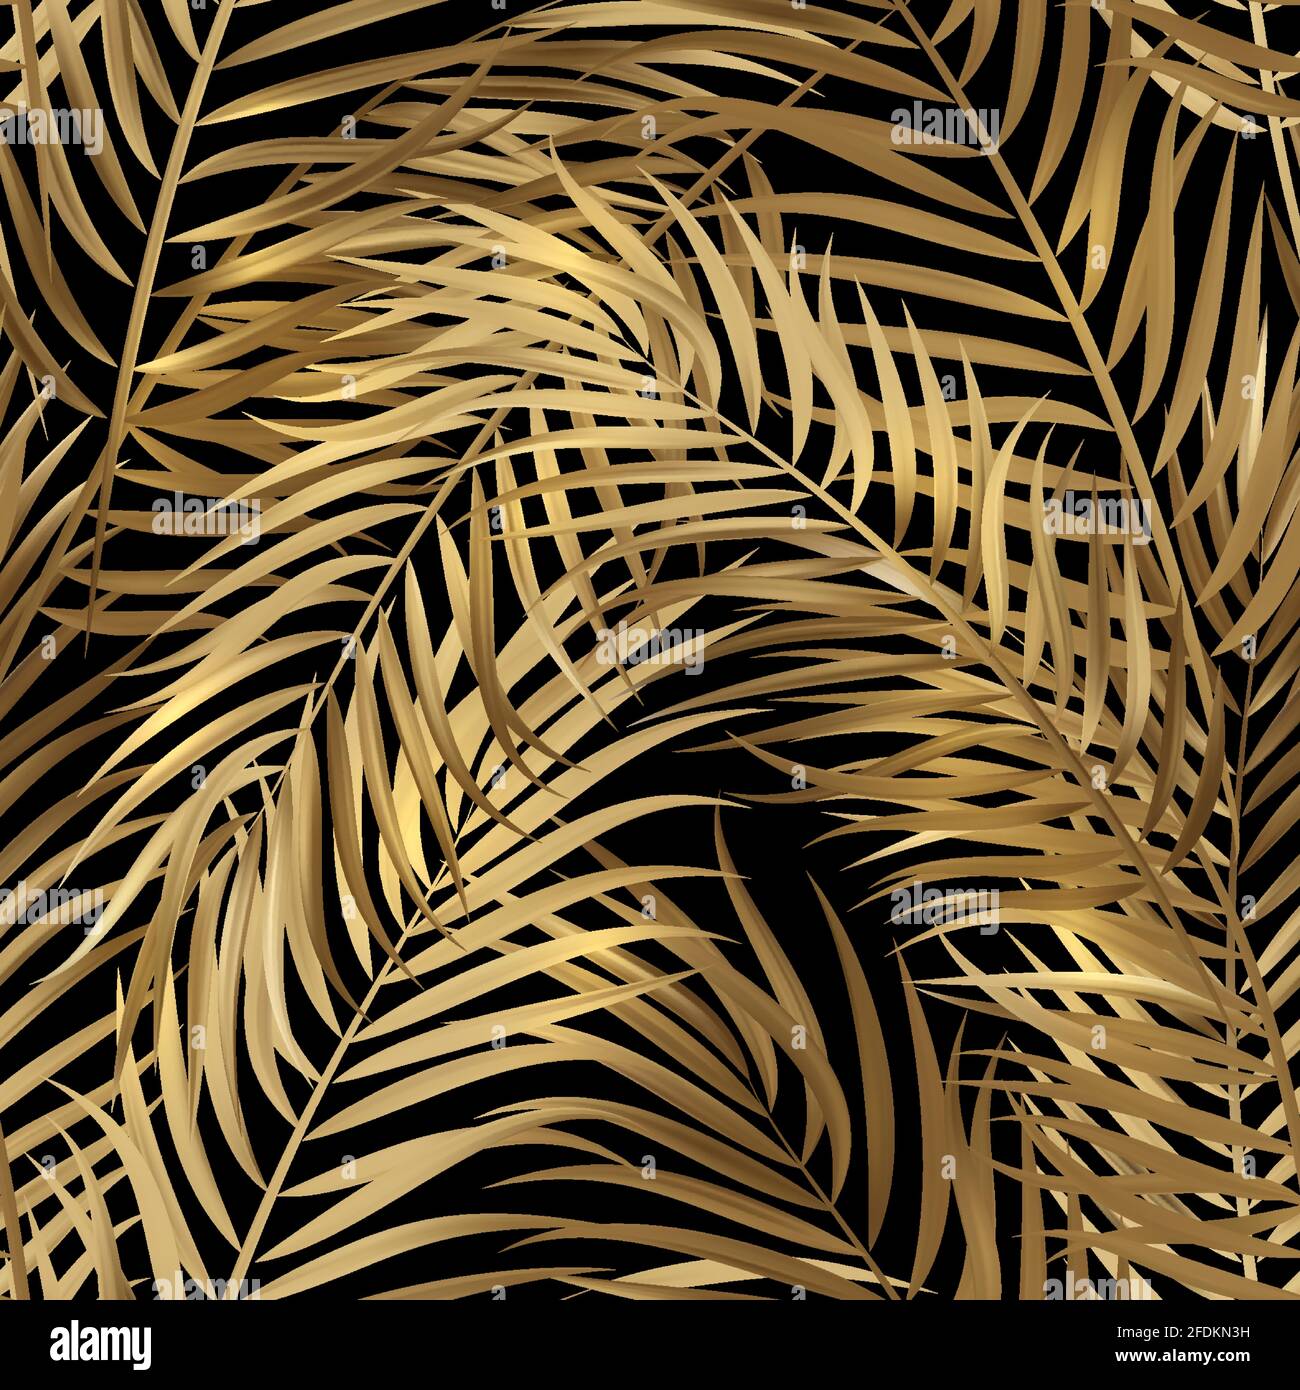 Von tropischen Palmen Blätter, Dschungel Blätter nahtlose Vektor florale Muster Hintergrund Stock Vektor